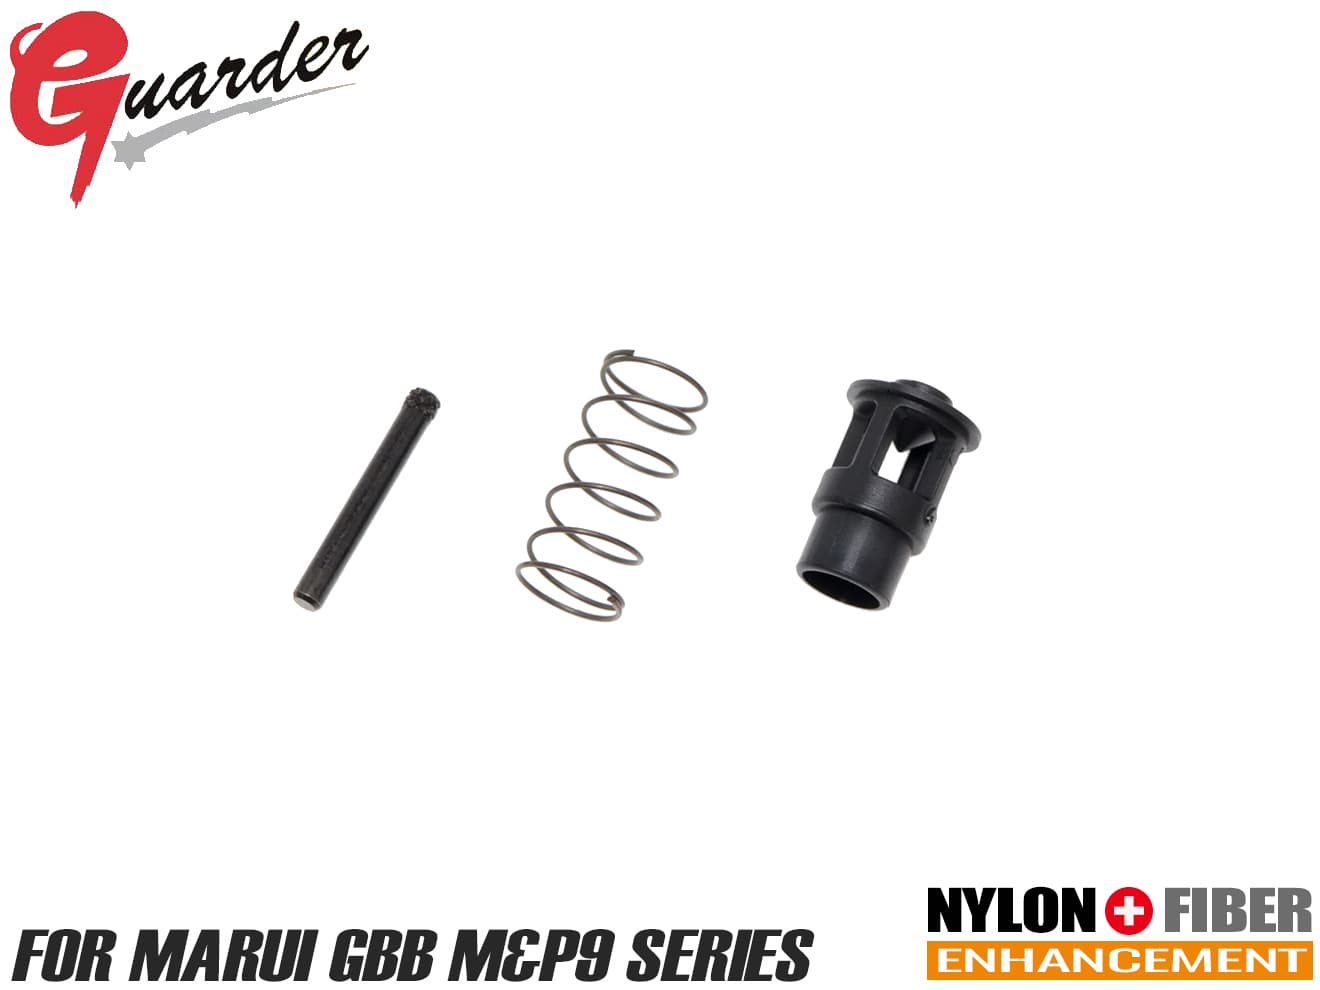 GUARDER 強化シリンダーバルブセット 東京マルイ GBB M&P9シリーズ用